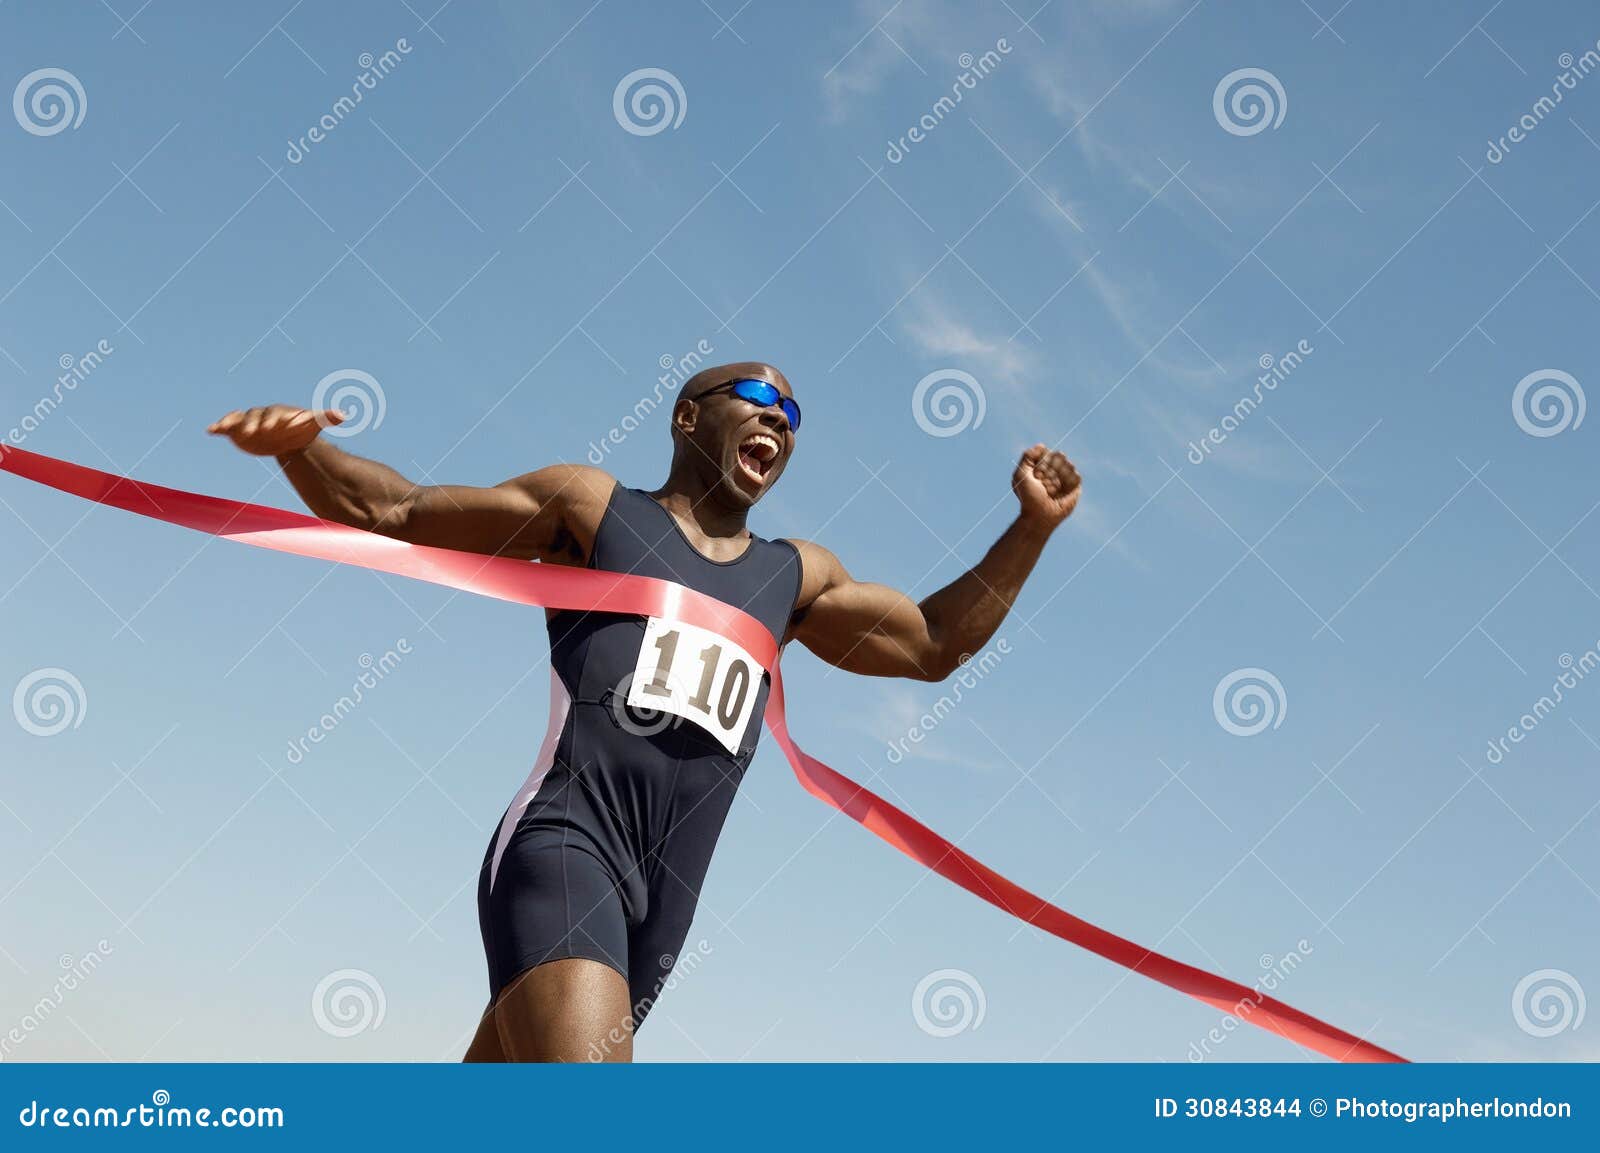 male runner winning race